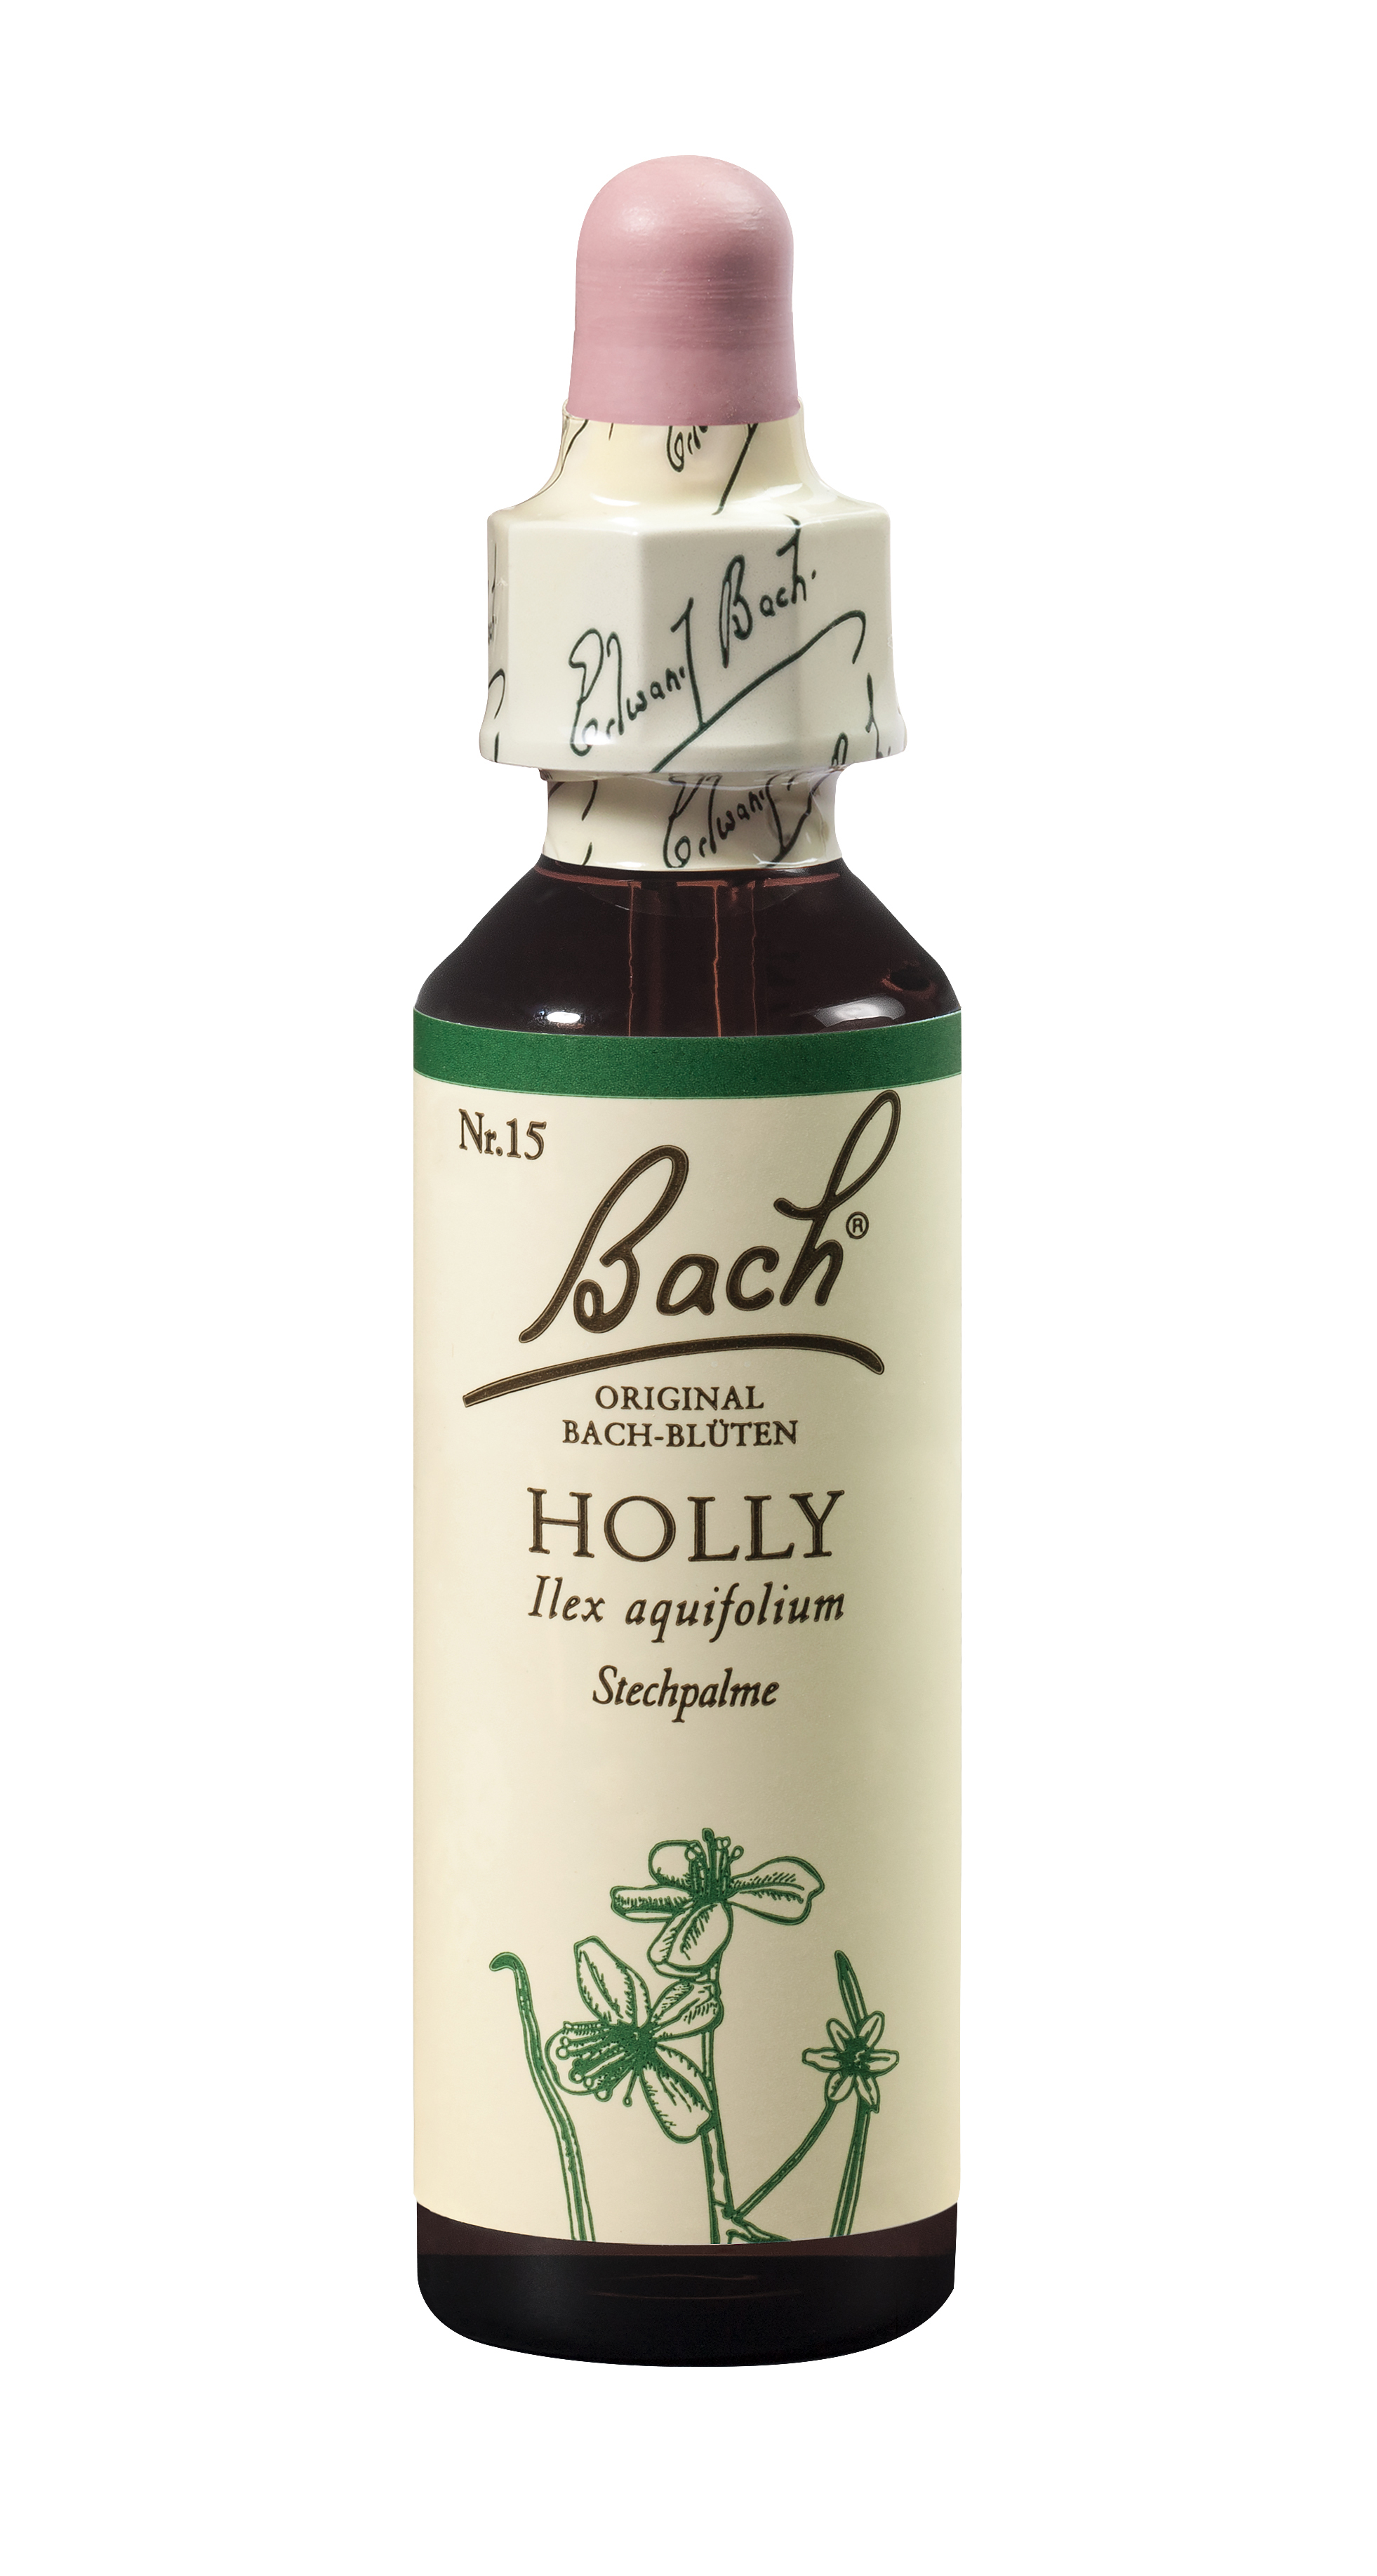 Bach®-Blüte Nr. 15 Holly (Stechpalme)